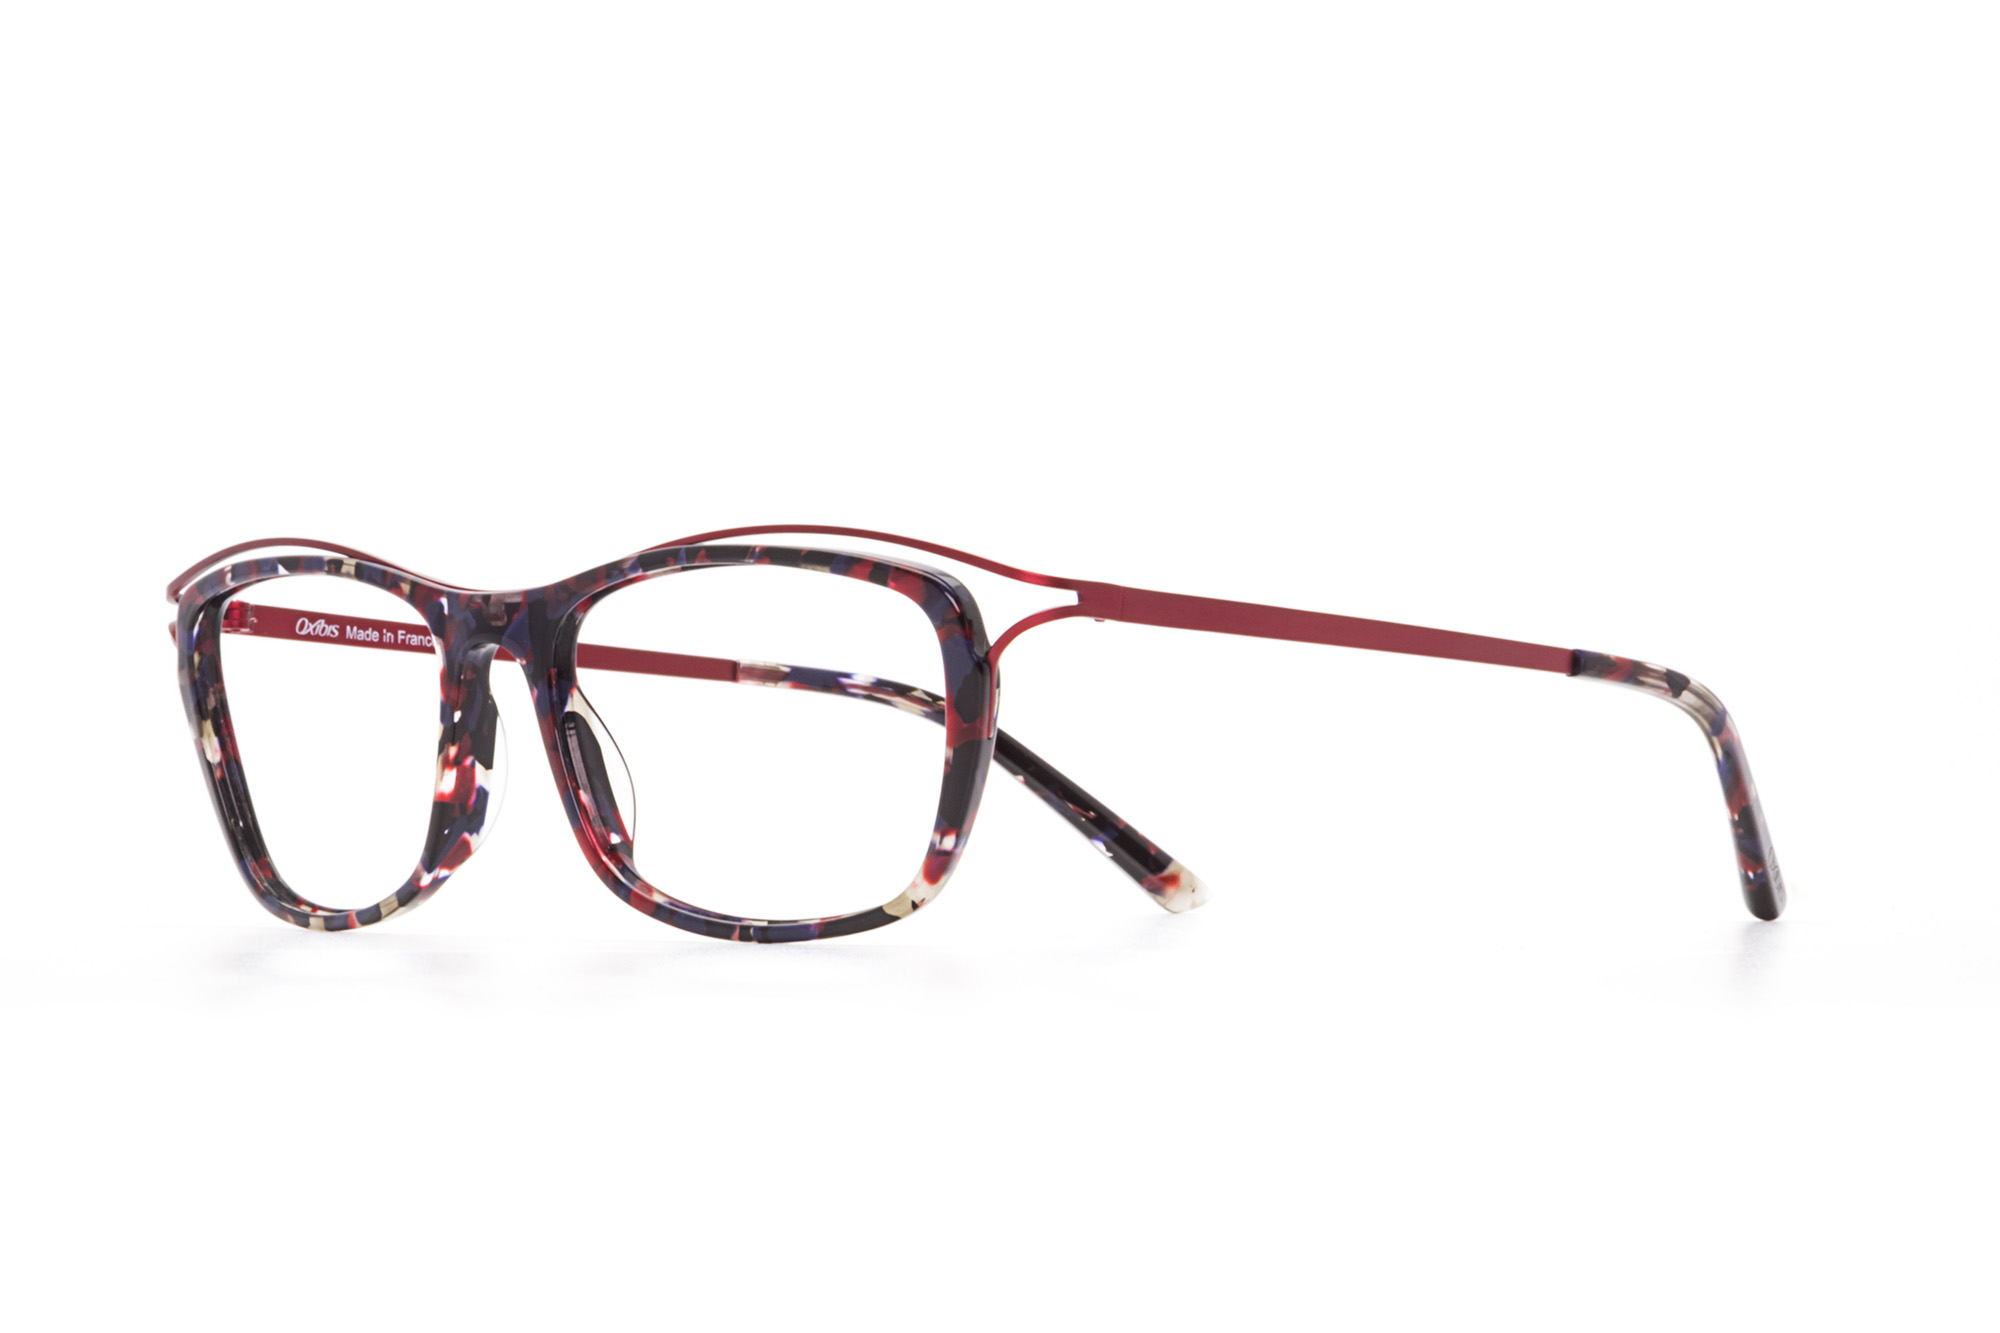 Kullanıma hazır optik tarzda işlenmiş camları ve optik uyumlu çerçevesiyle Oxibis Boogy BG3C3 51 orta ekartman kırmızı ve siyah renkli cat eye model kadın gözlüğünü optisyen veya gözlükçülerin sunacağı numarasız veya numaralı cam özelleştirmeleriyle size en yakın gözlükçüden satın alabilirsiniz.